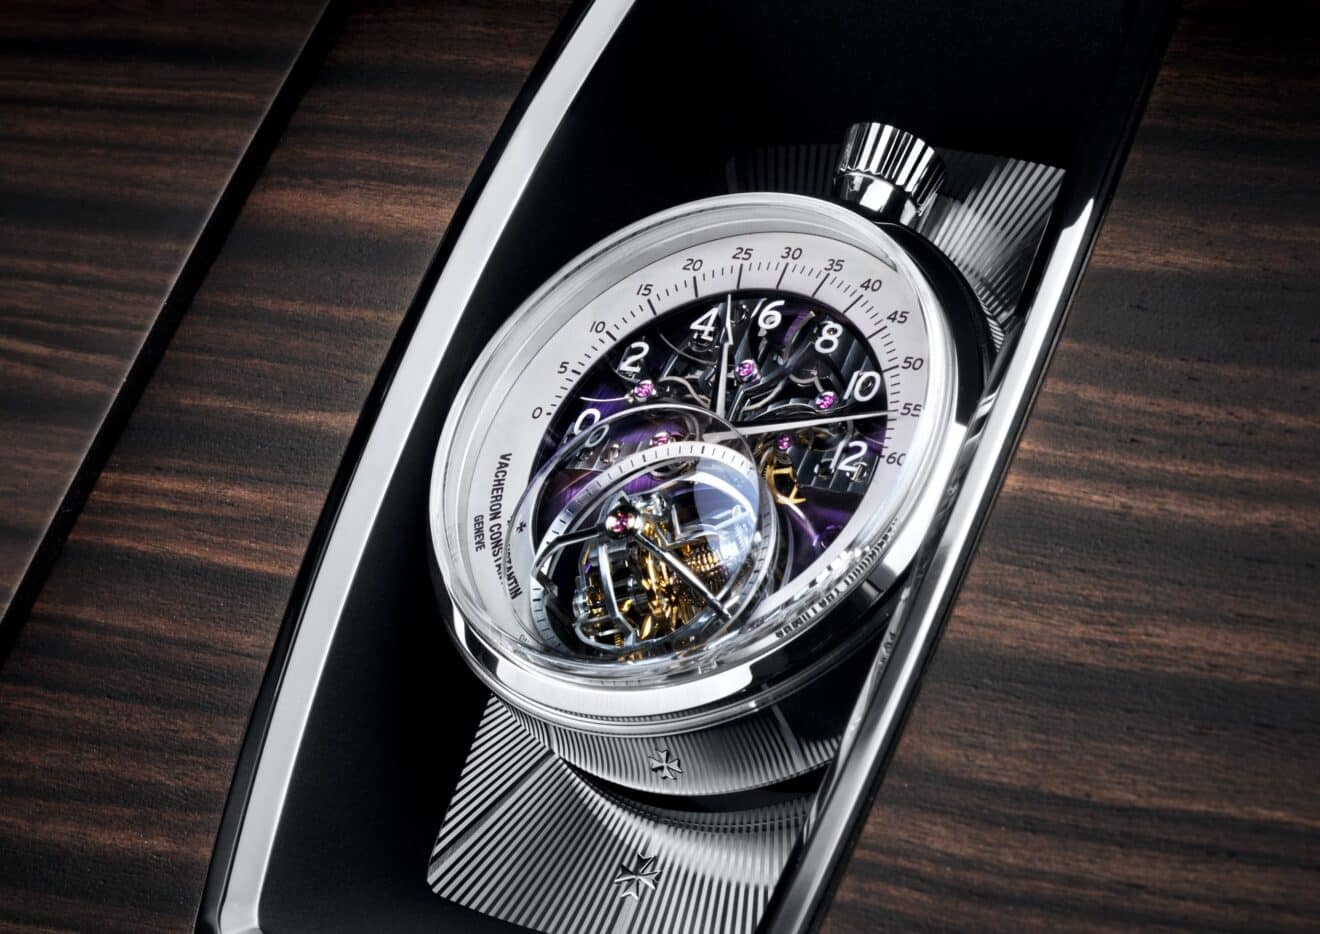 Les Cabinotiers Armillary Tourbillon de Vacheron Constantin : une montre exceptionnelle conçue pour une Rolls Royce exceptionnelle